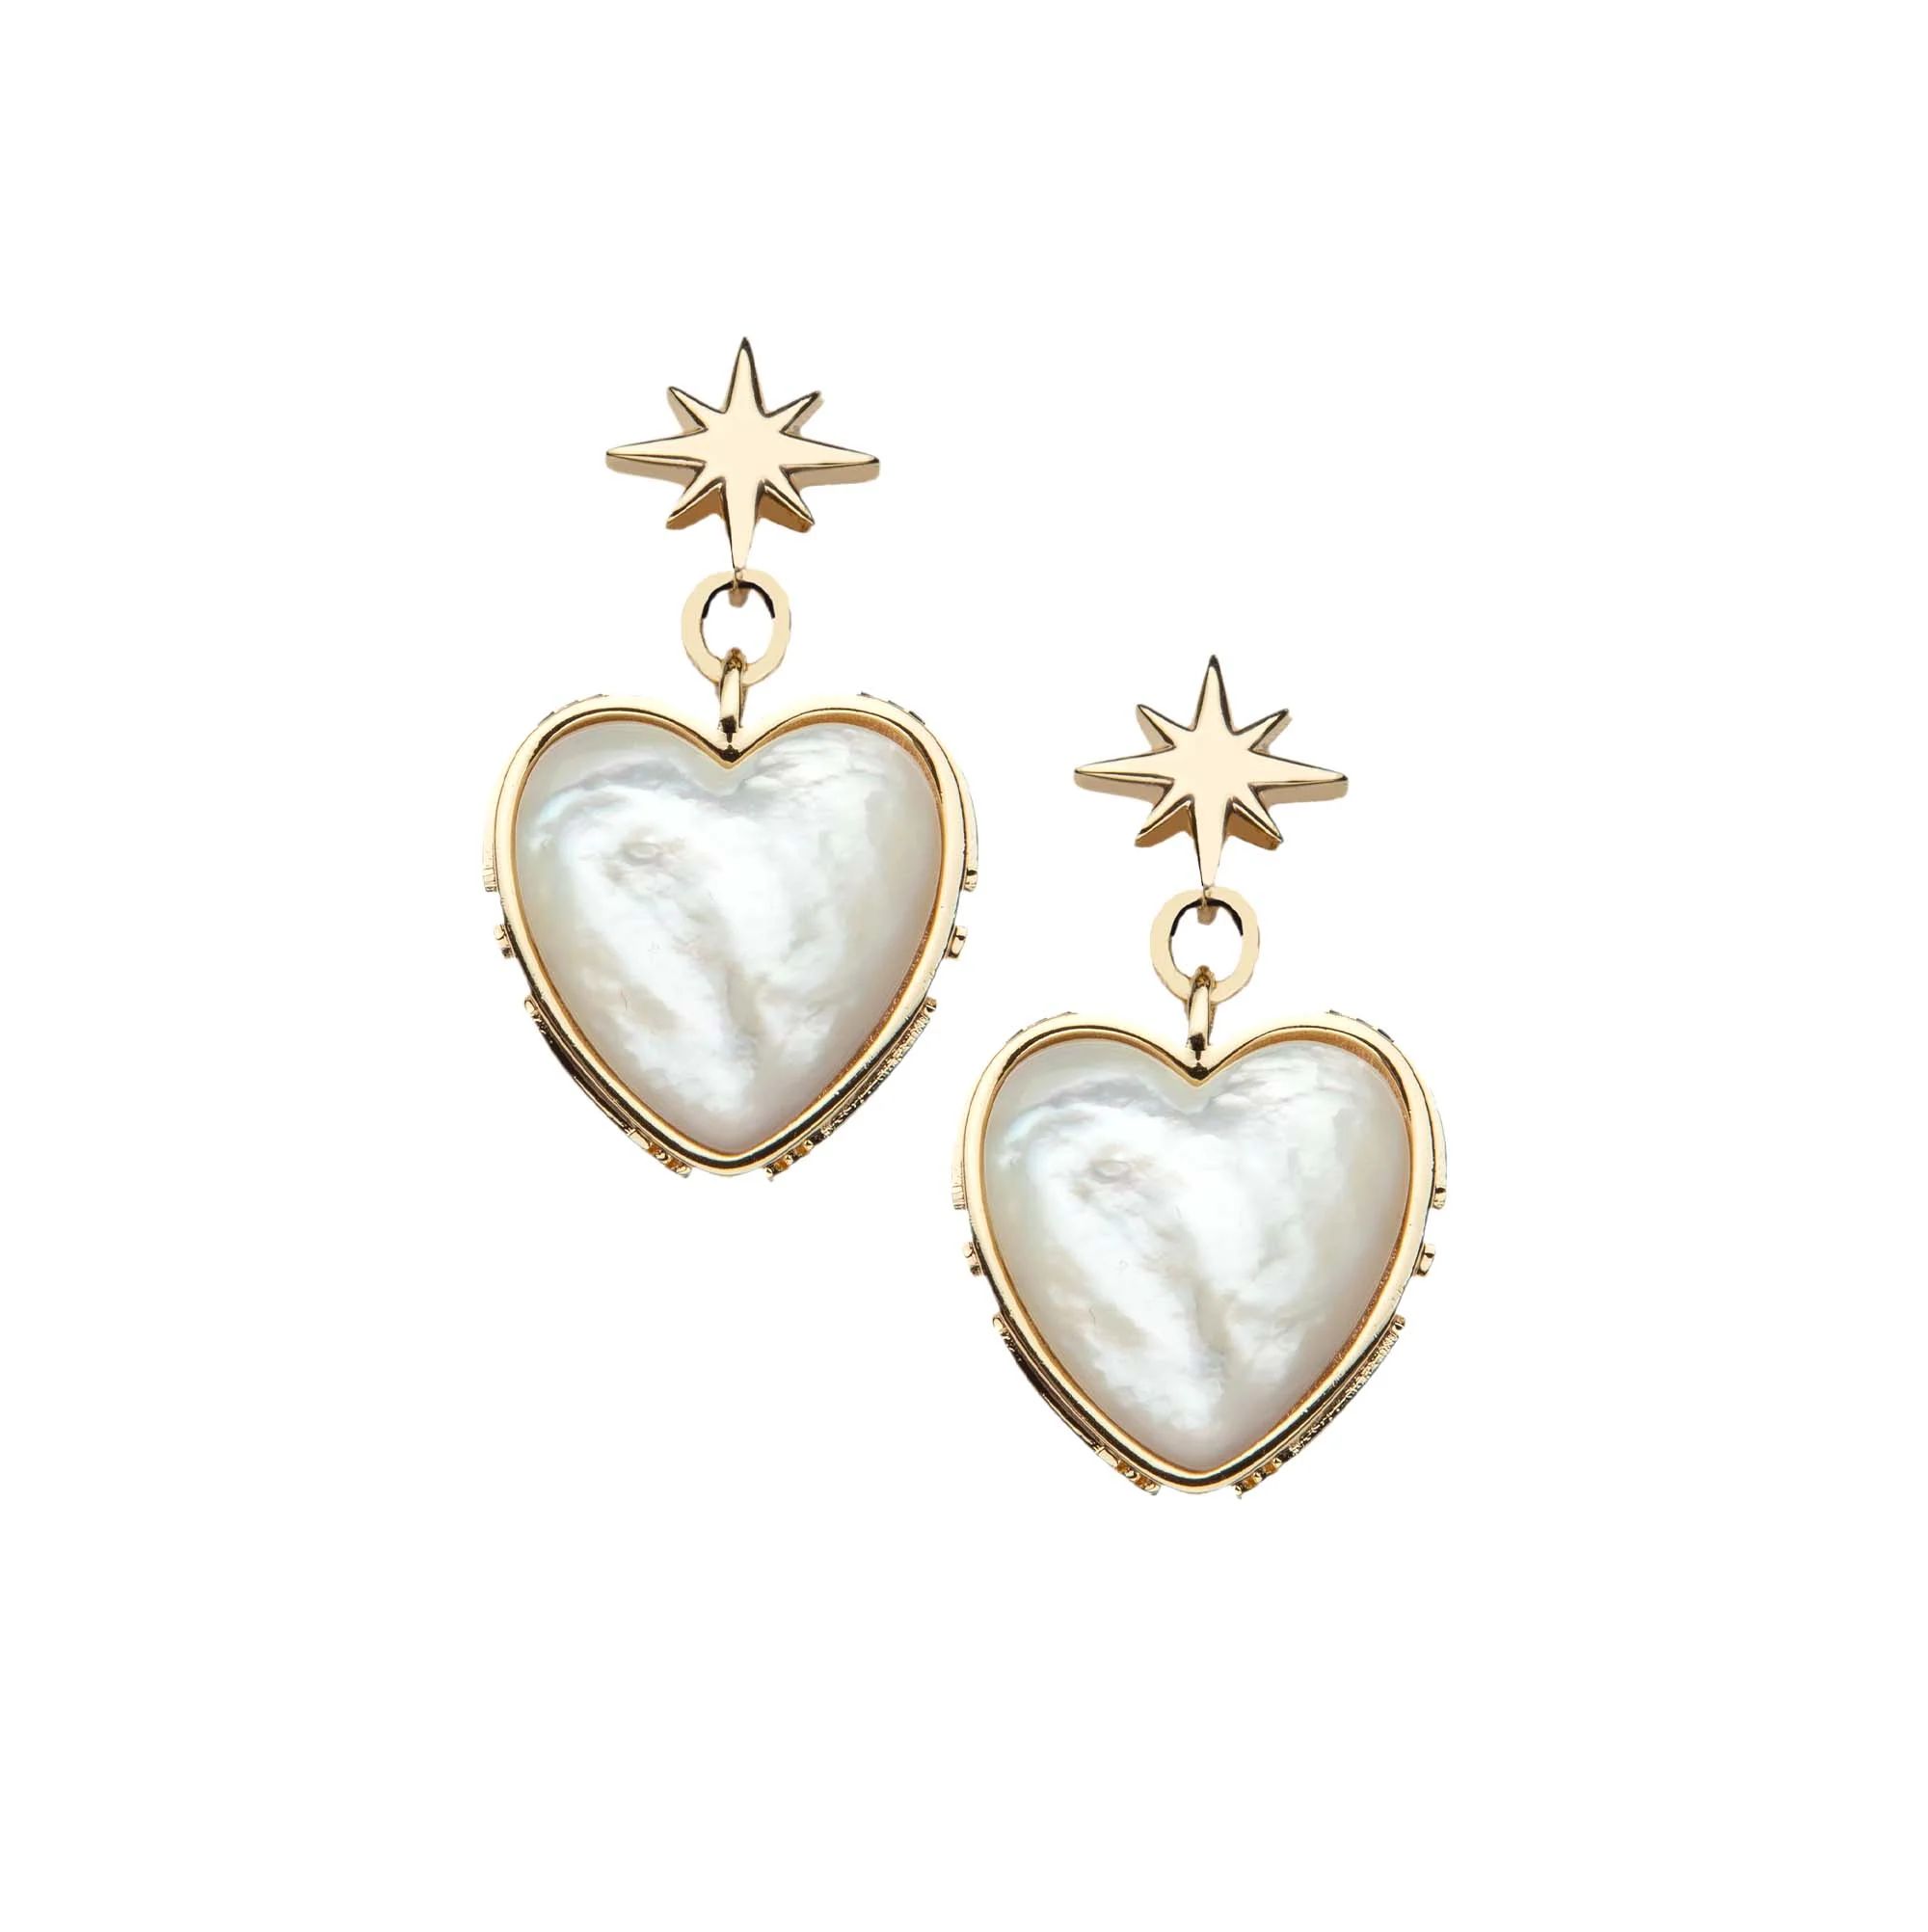 LOVE From the Heart Earrings | Jane Win